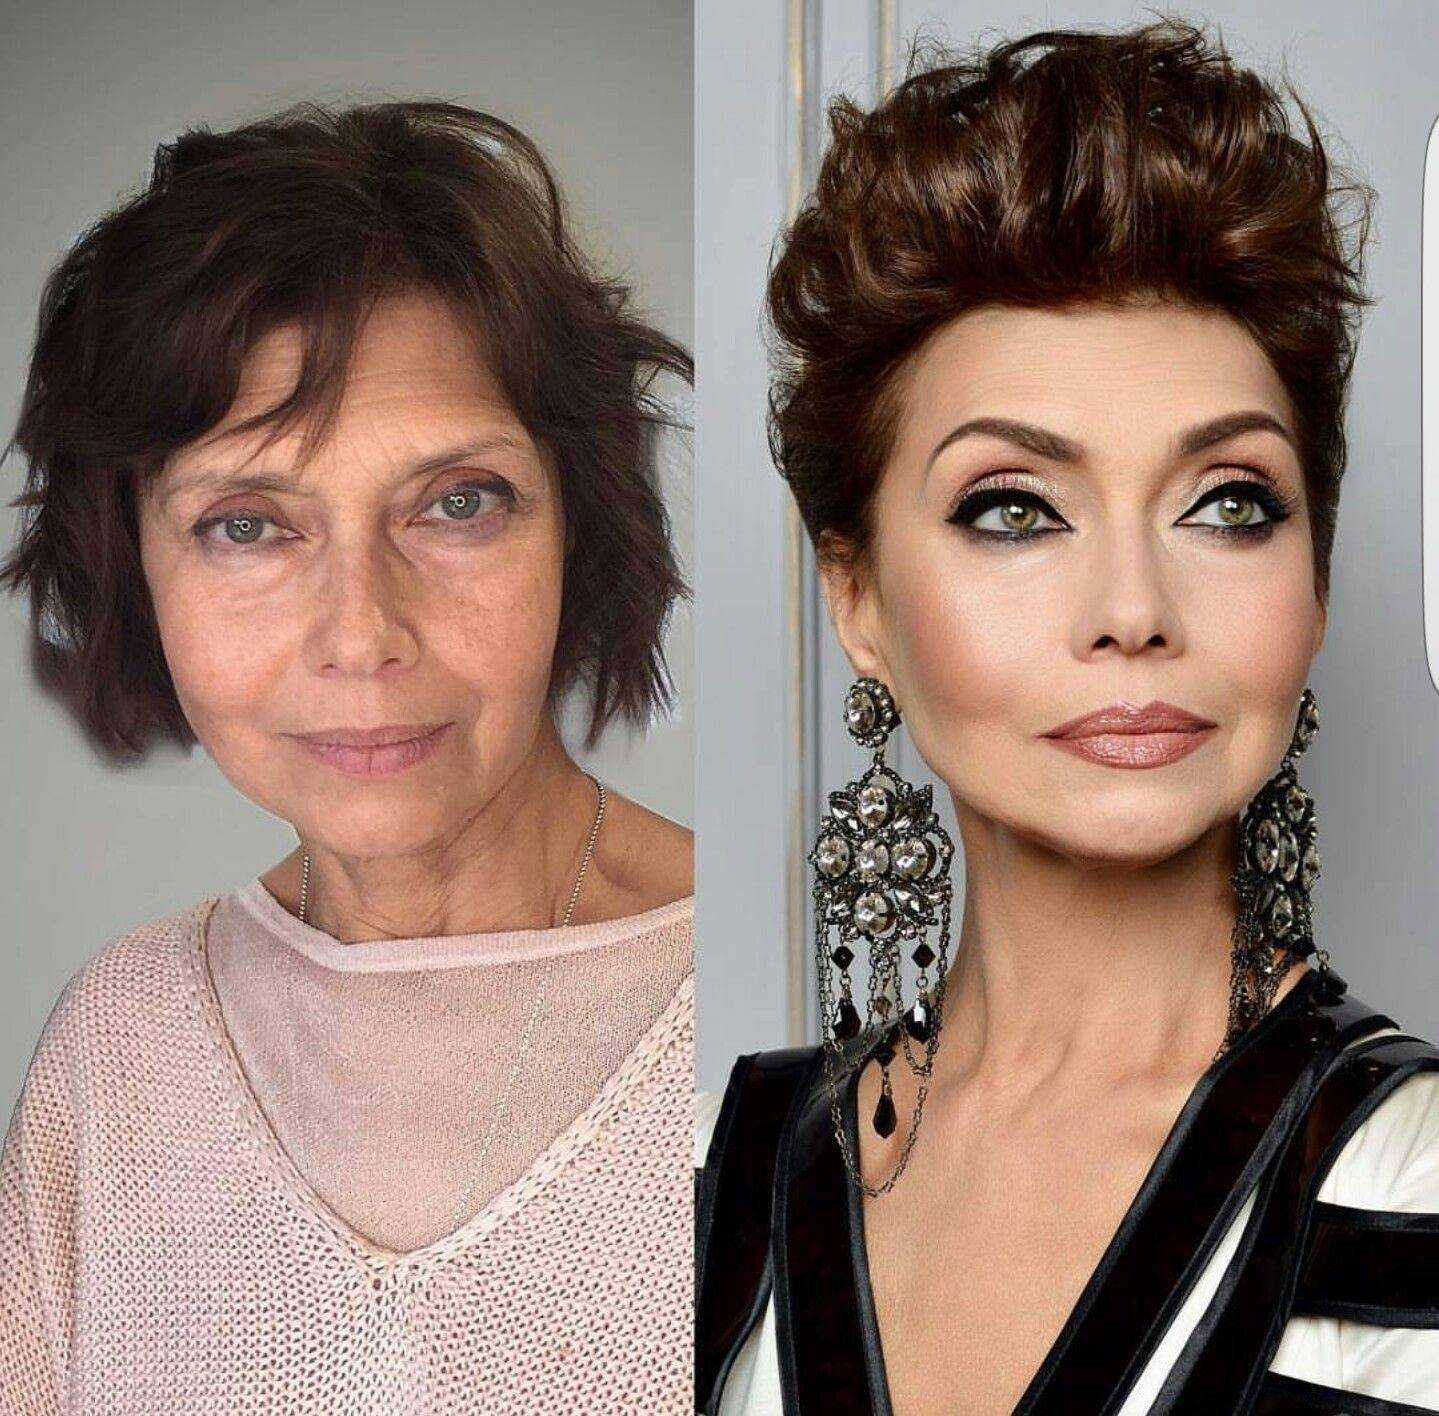 Какой макияж следует выбирать женщинам после 50, чтобы выглядеть моложе своих лет Секреты, позволяющие уменьшить возраст